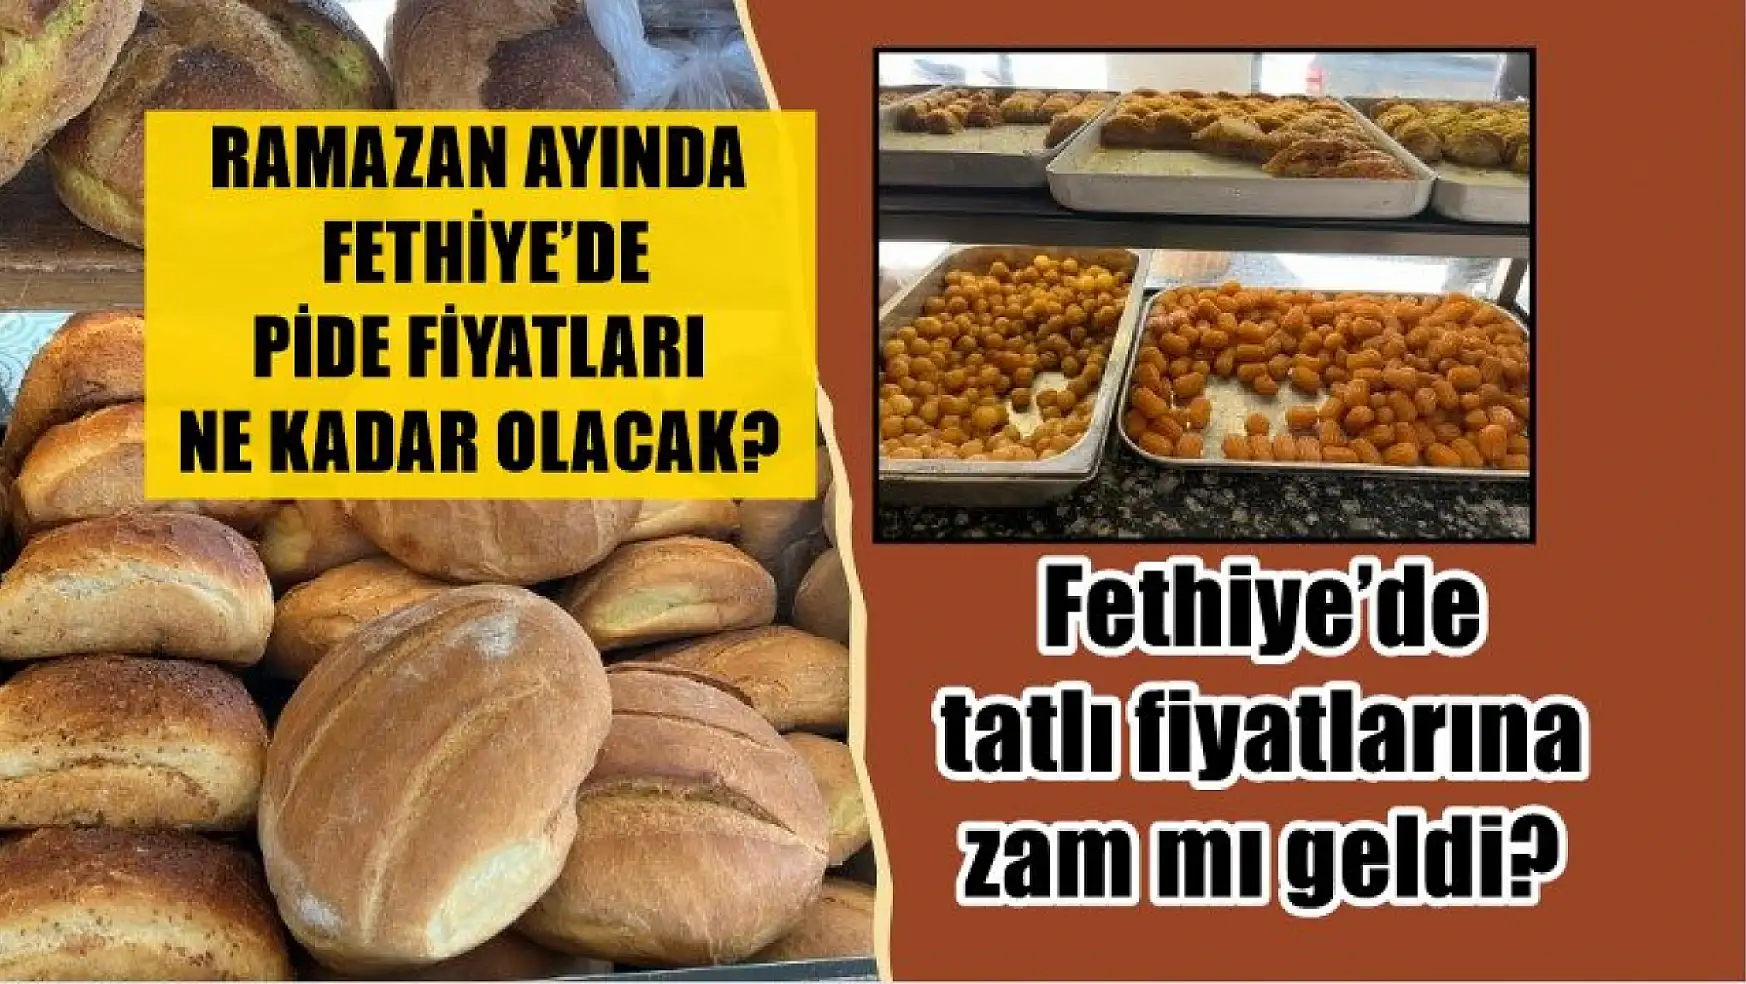 Ramazan ayında Fethiye'de pide fiyatları ne kadar olacak? Fethiye'de tatlı fiyatlarına zam mı geldi?